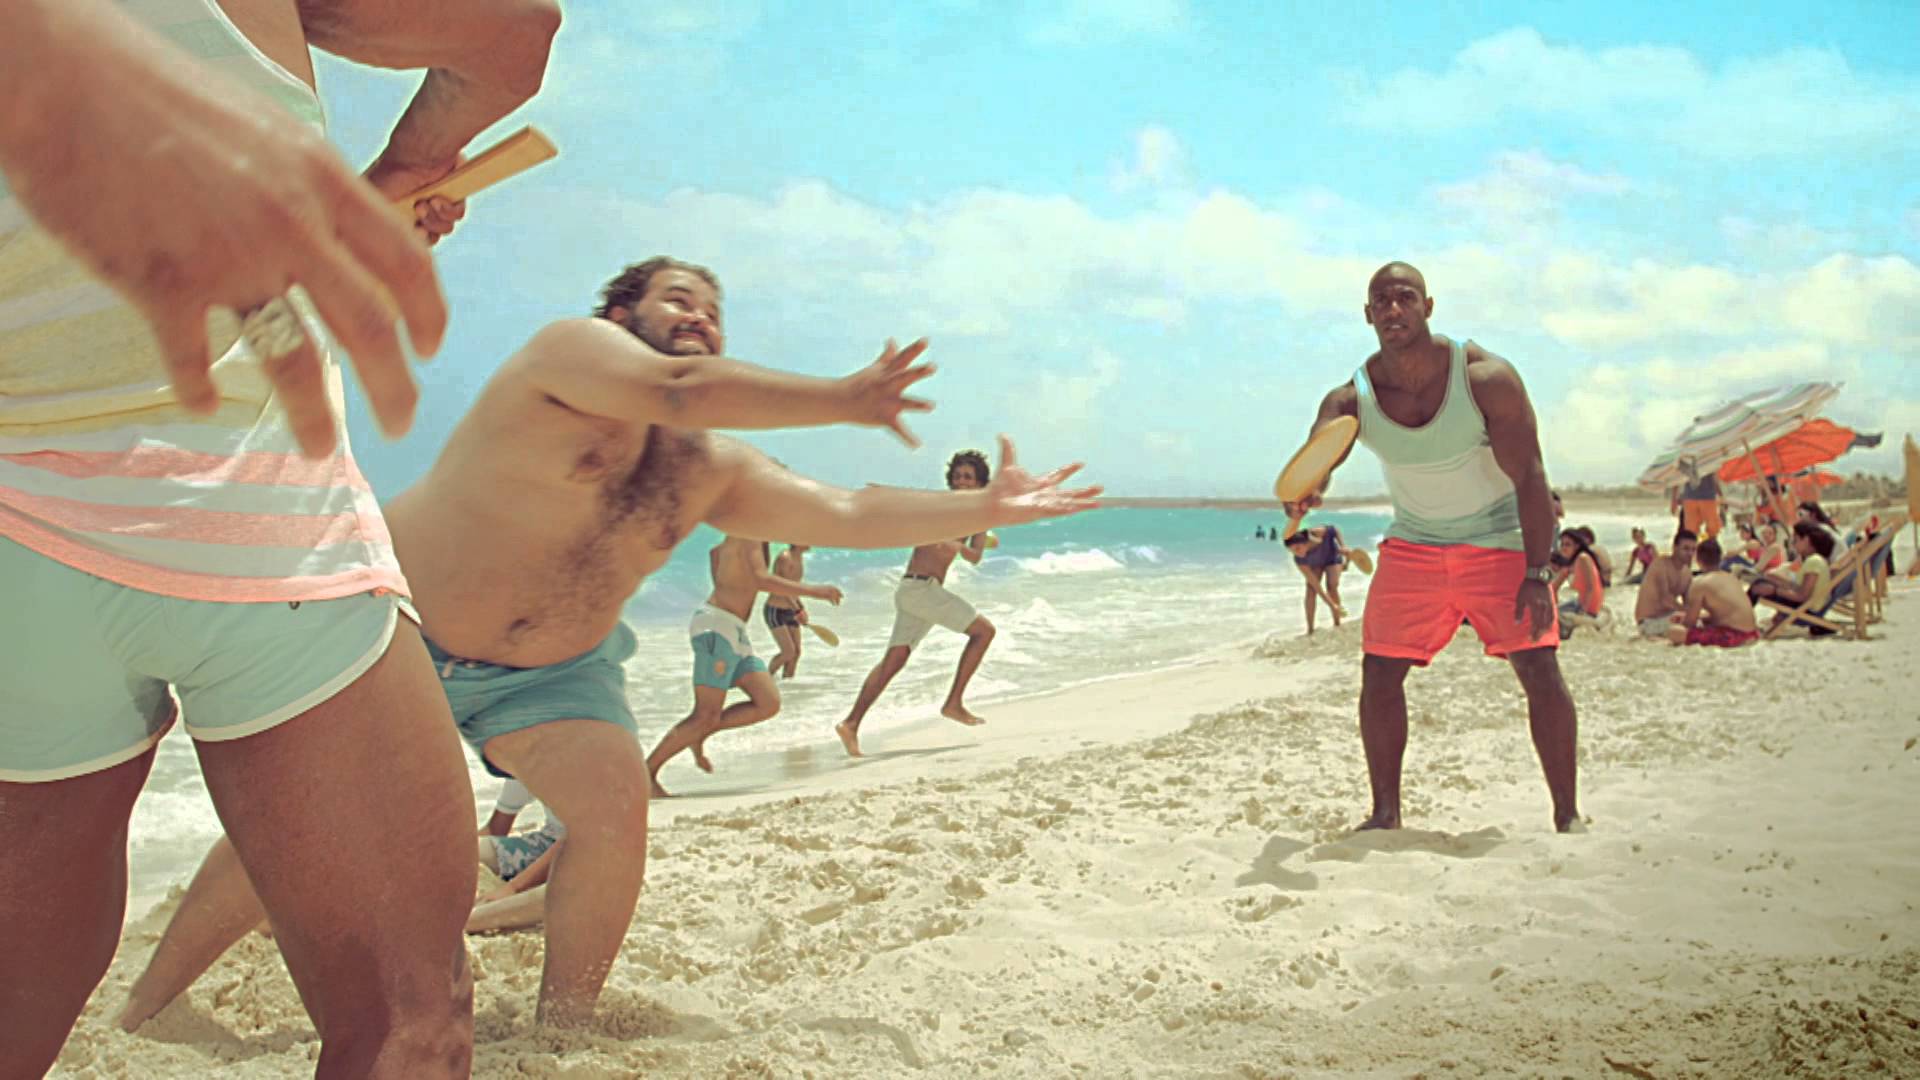 Marseilia Beach 4 Film Advert By DDB: Racket | Ads of the World™